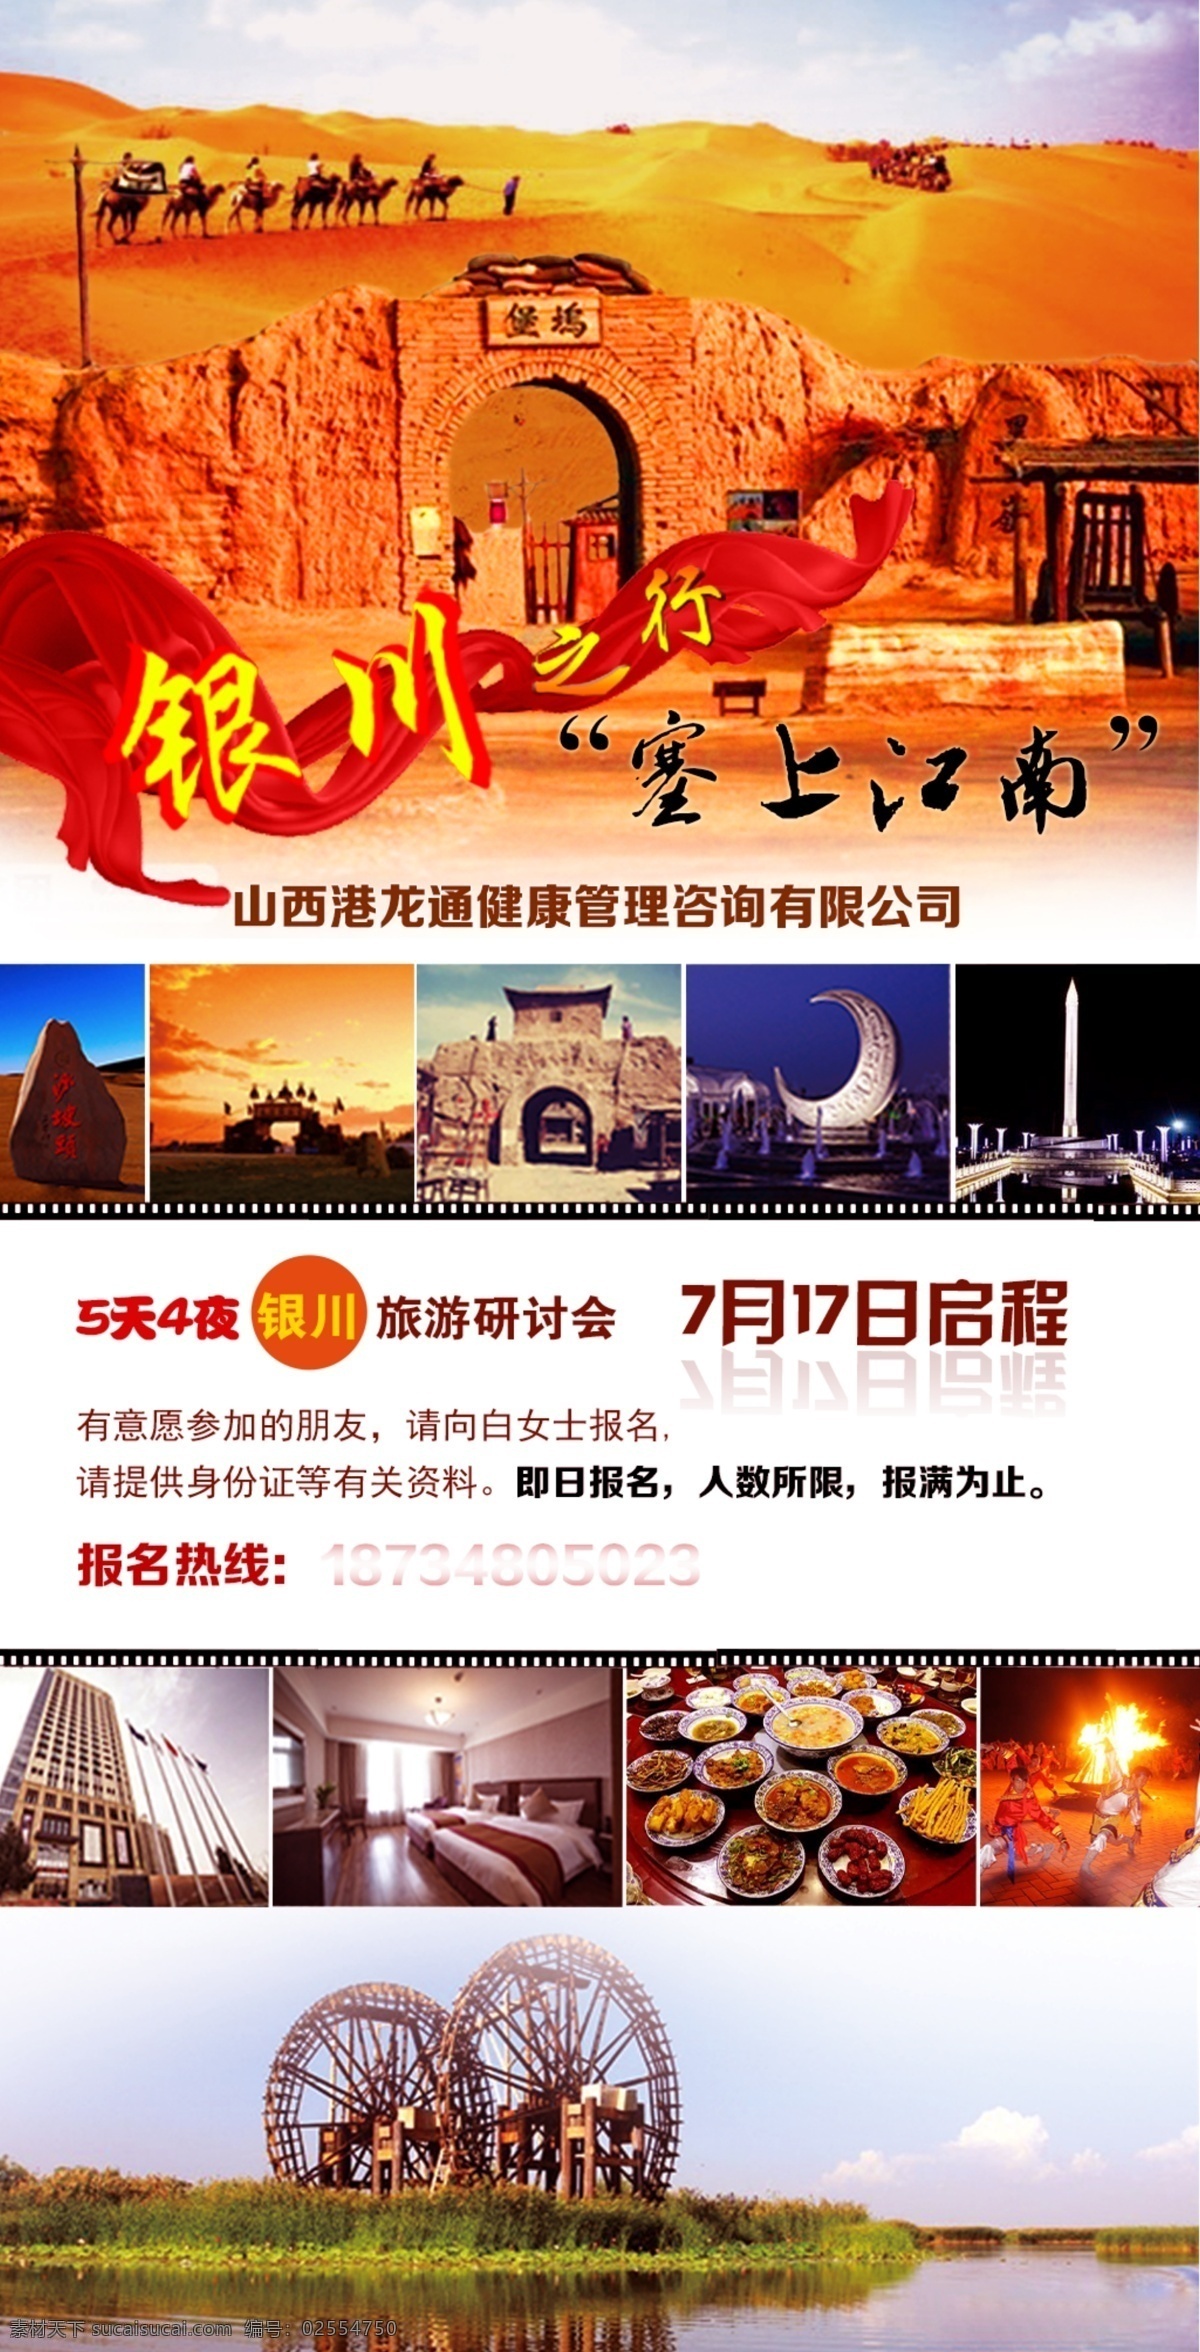 银川 旅游 宣传海报 宁夏 塞上江南 烤全羊